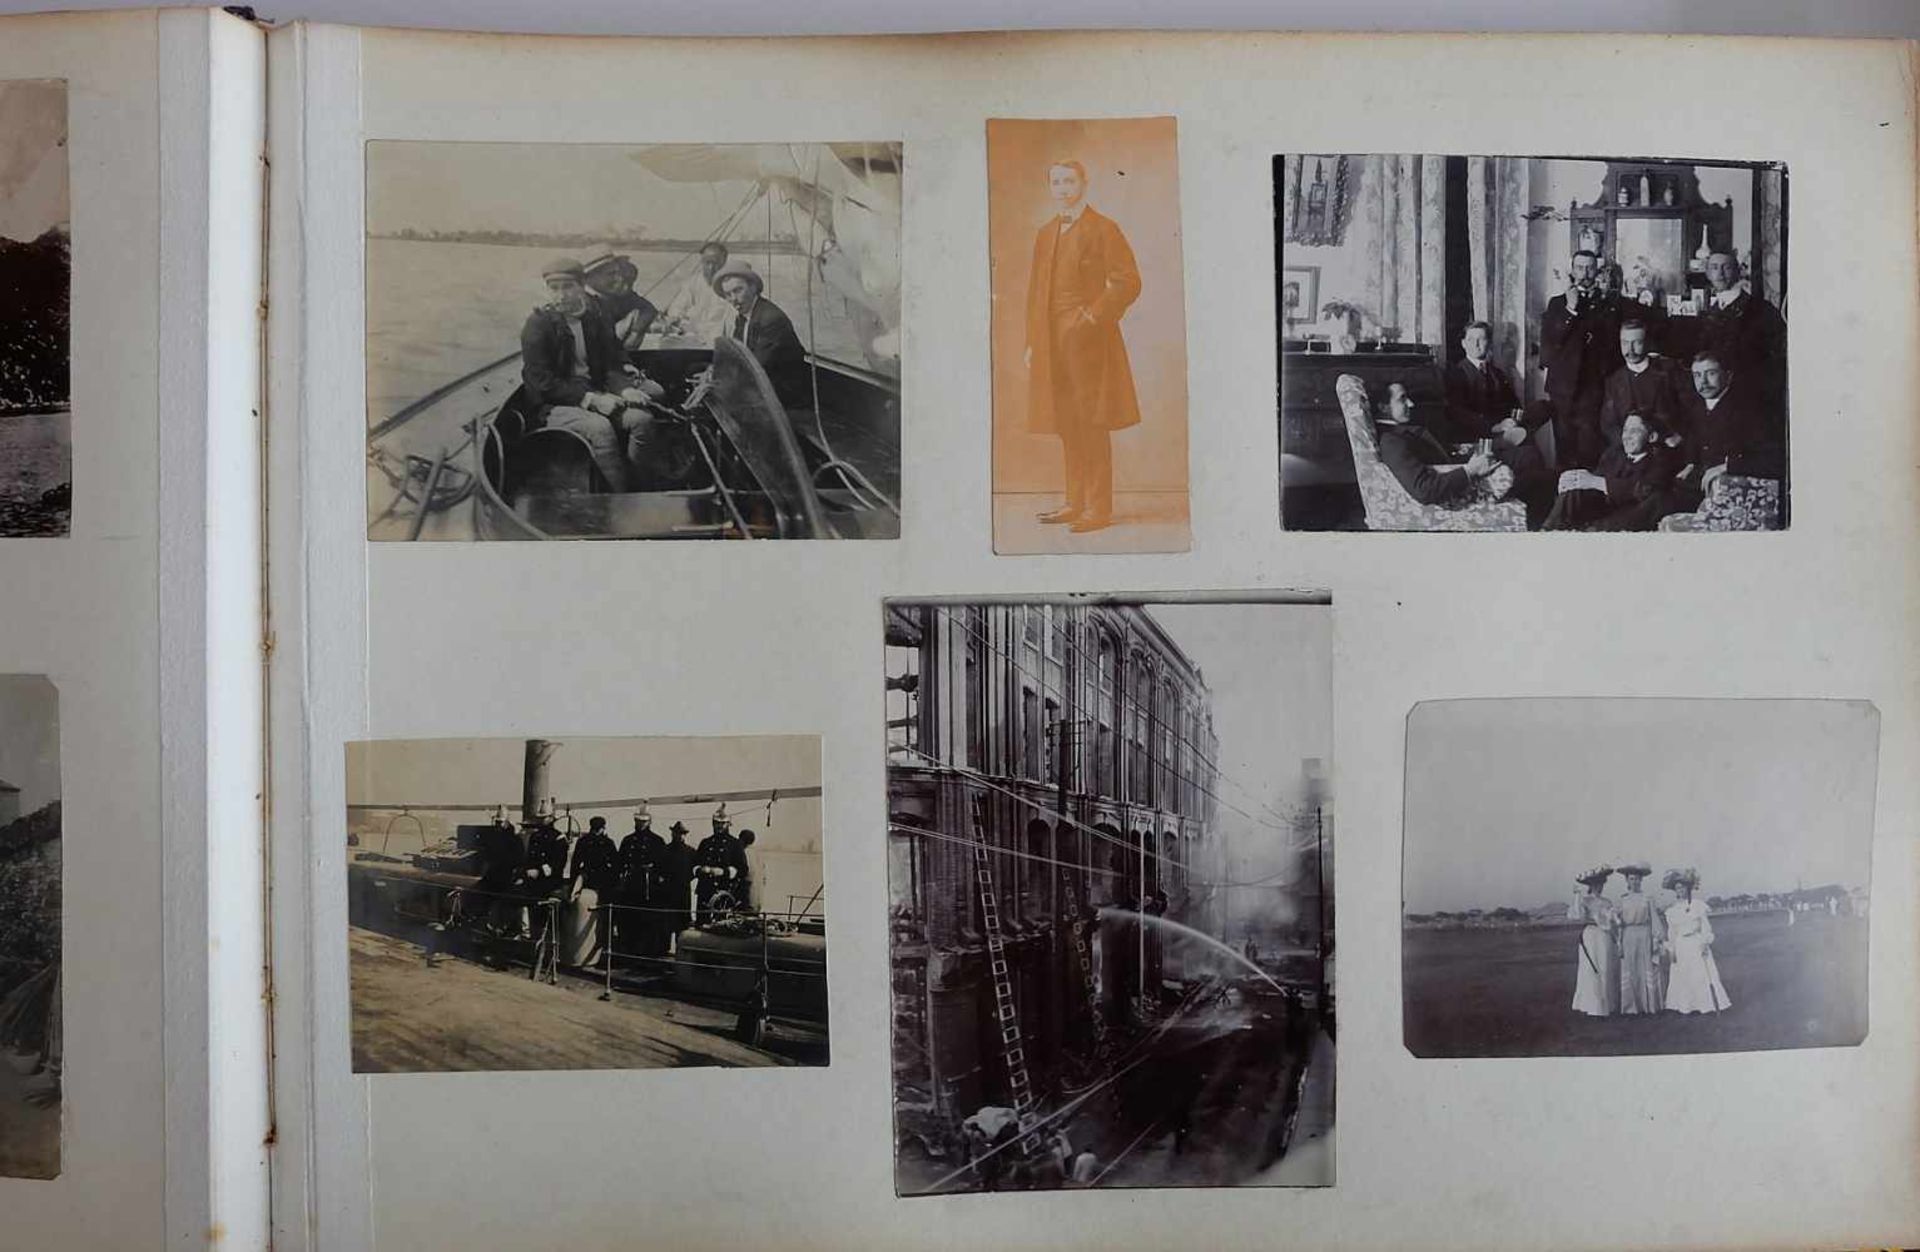 DEUTSCHES REICH, 2 Fotoalben, Shanghai, um 1900, Fotos des Militär- und Freizeitlebens eines - Image 3 of 7